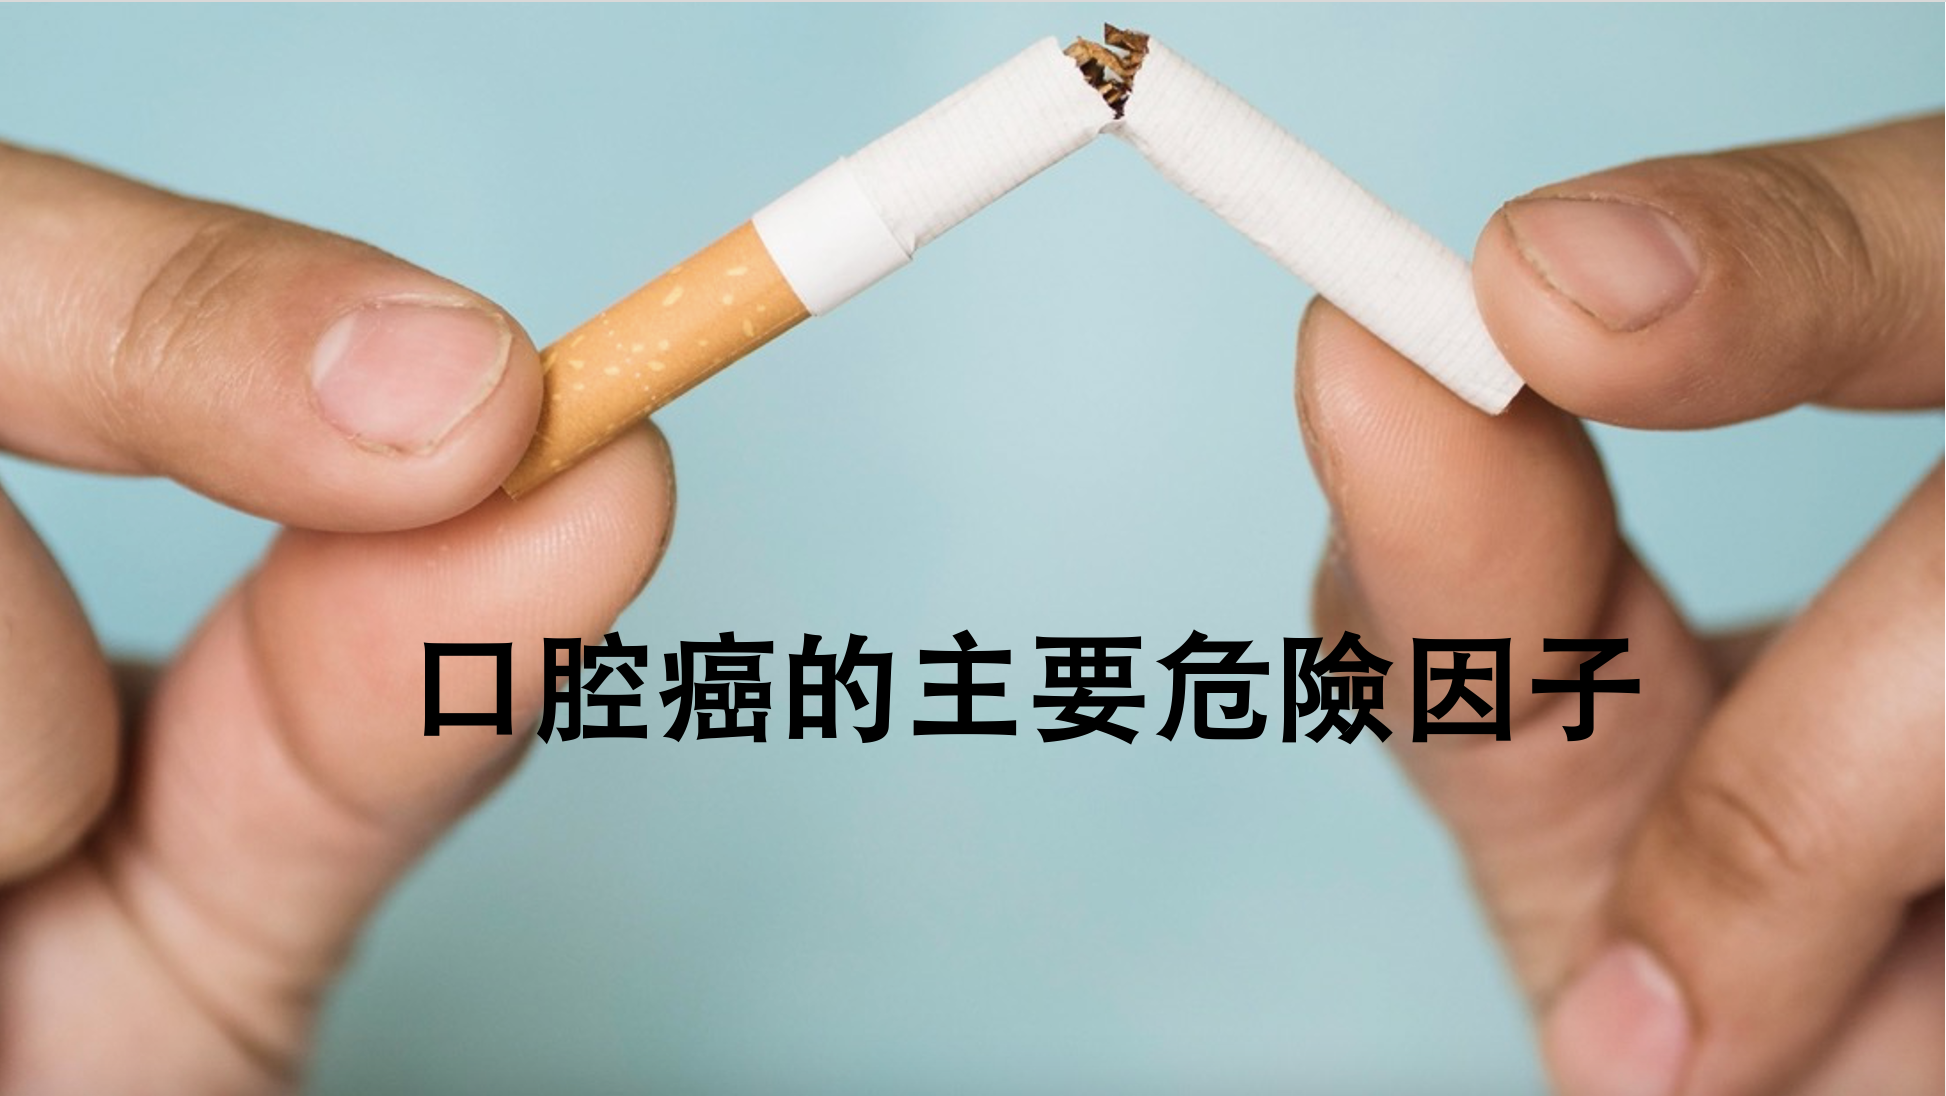 Menurut laporan Organisasi Kesehatan Dunia (WHO), merokok dapat menyebabkan bau mulut, gigi kuning, bahkan meningkatkan risiko gigi tanggal dan kanker mulut. (Gambar: motionelements)